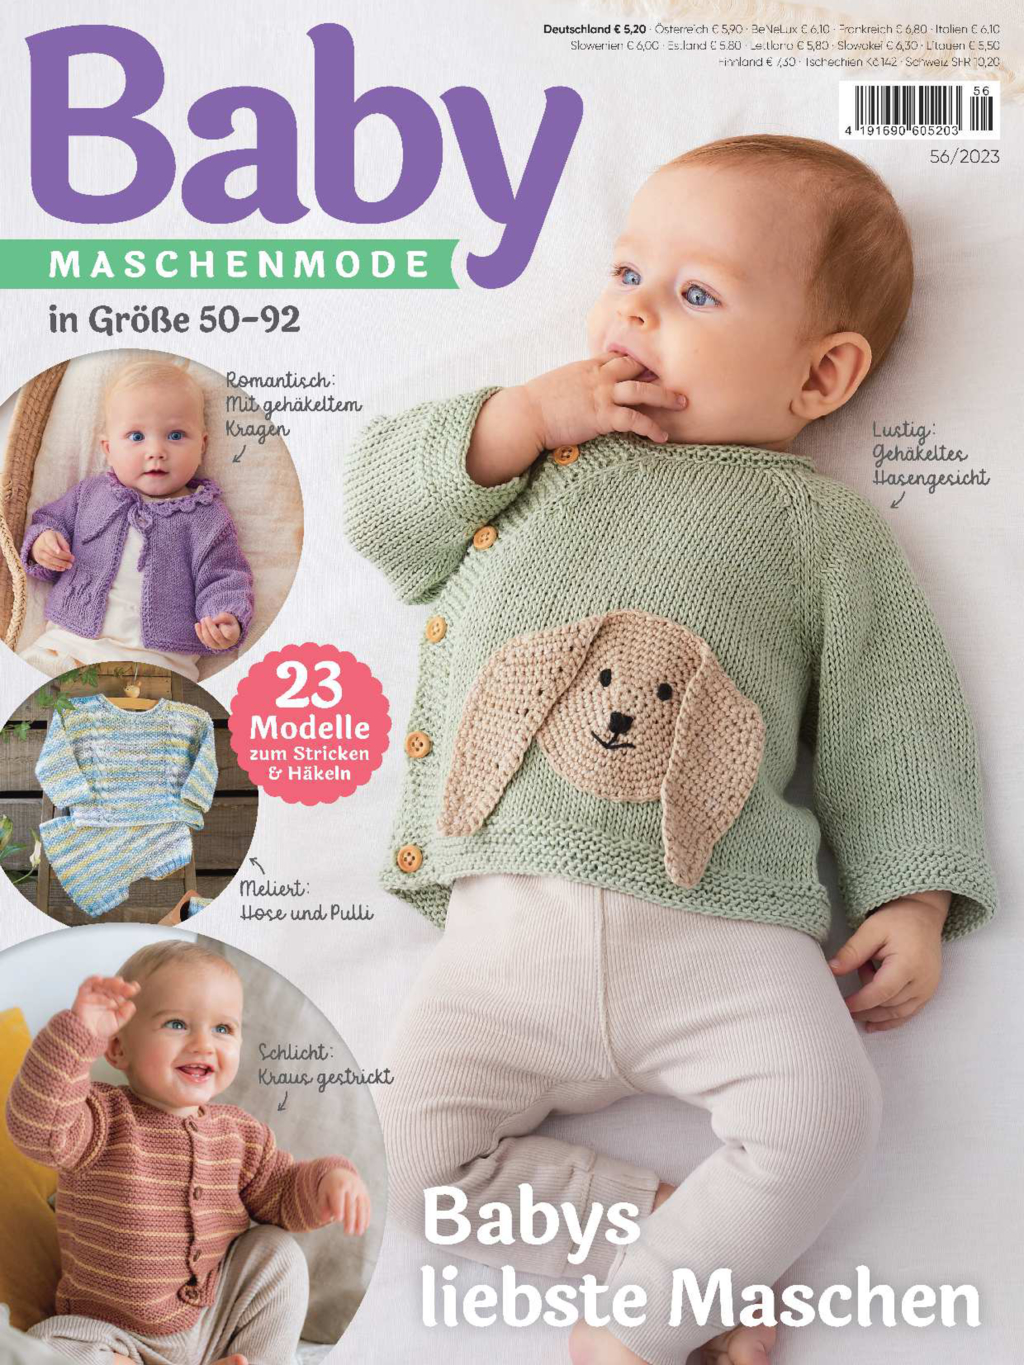 Baby Maschenmode Bundle HaB41/24